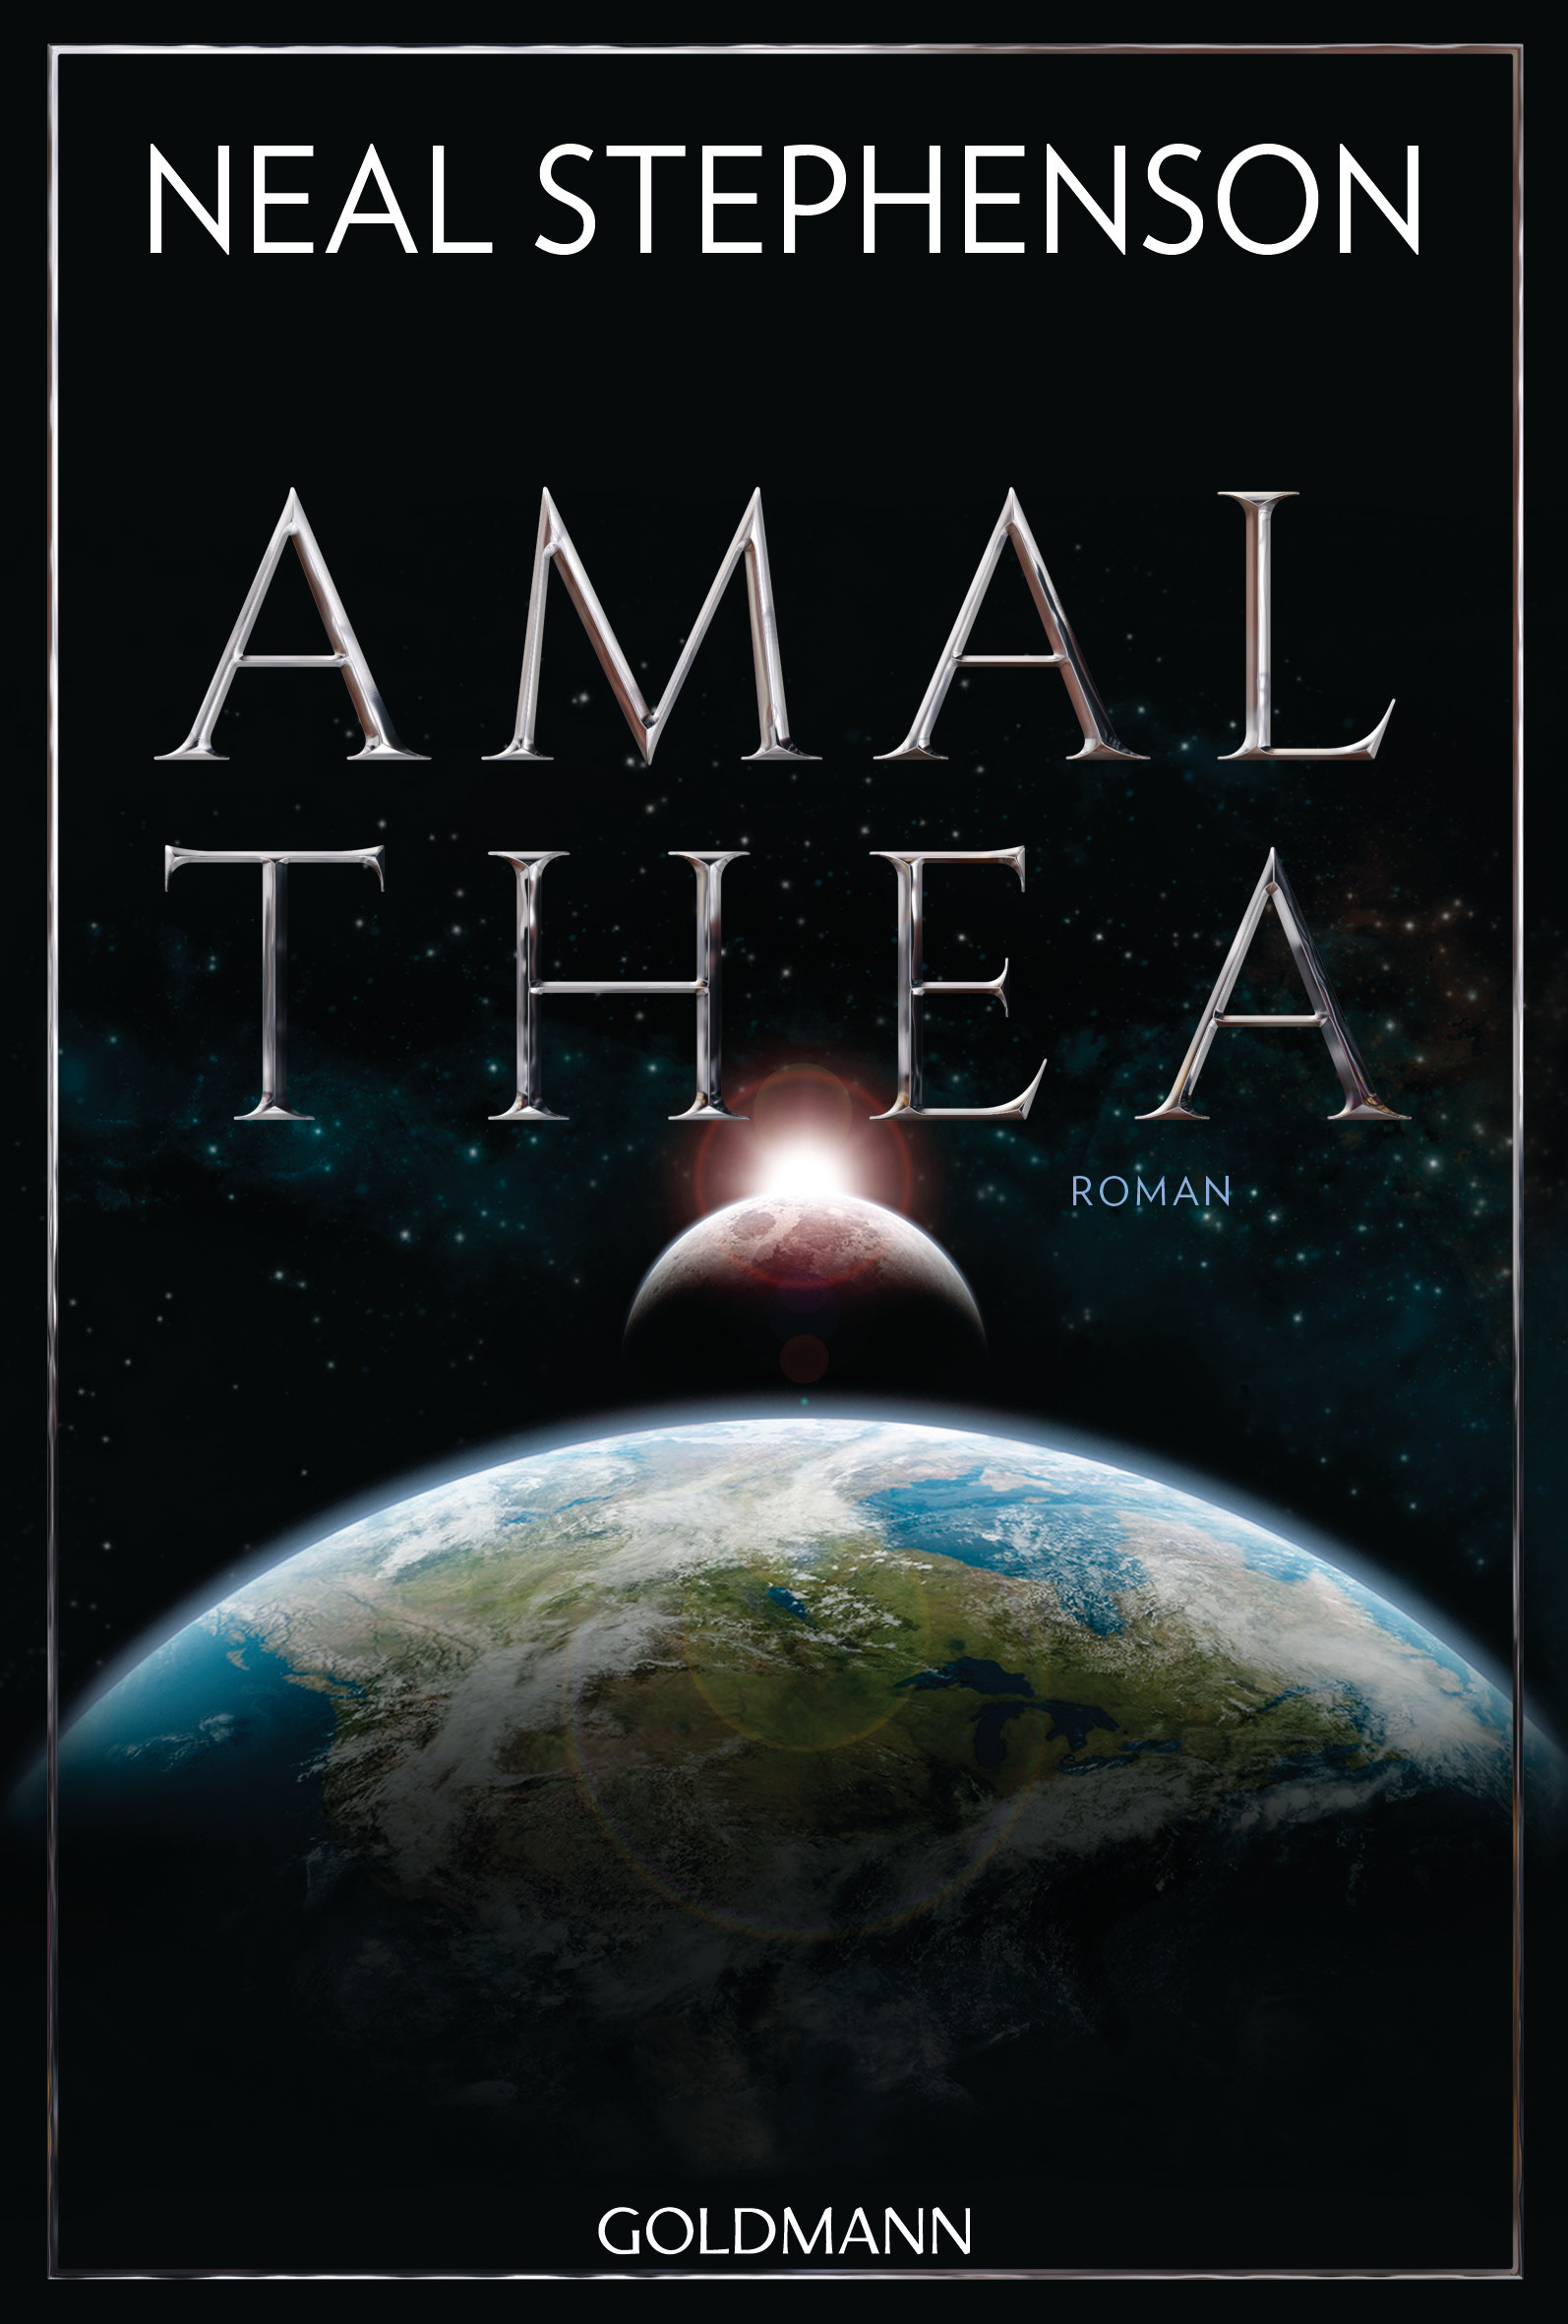 Neal Stephenson: Amalthea